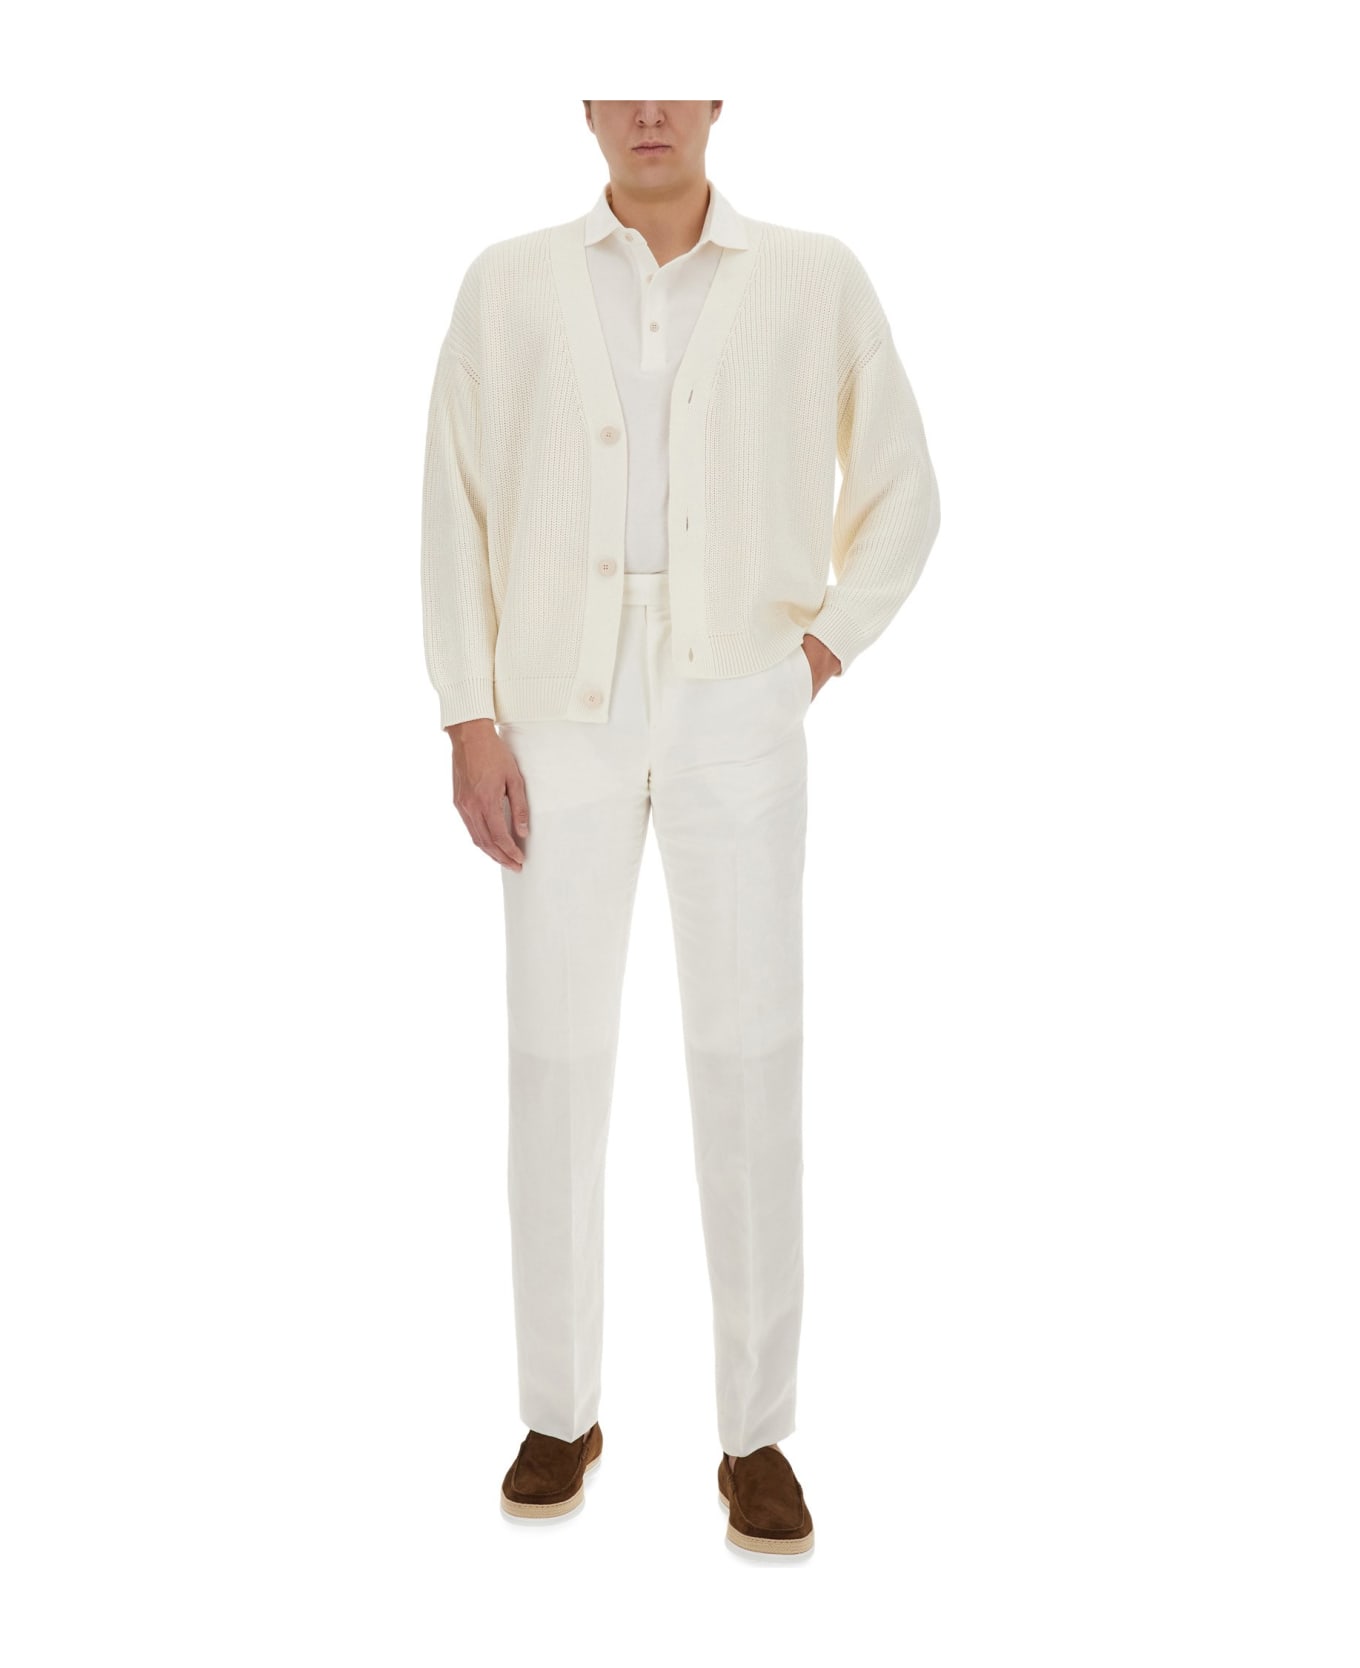 Lardini Regular Fit Polo Shirt - WHITE